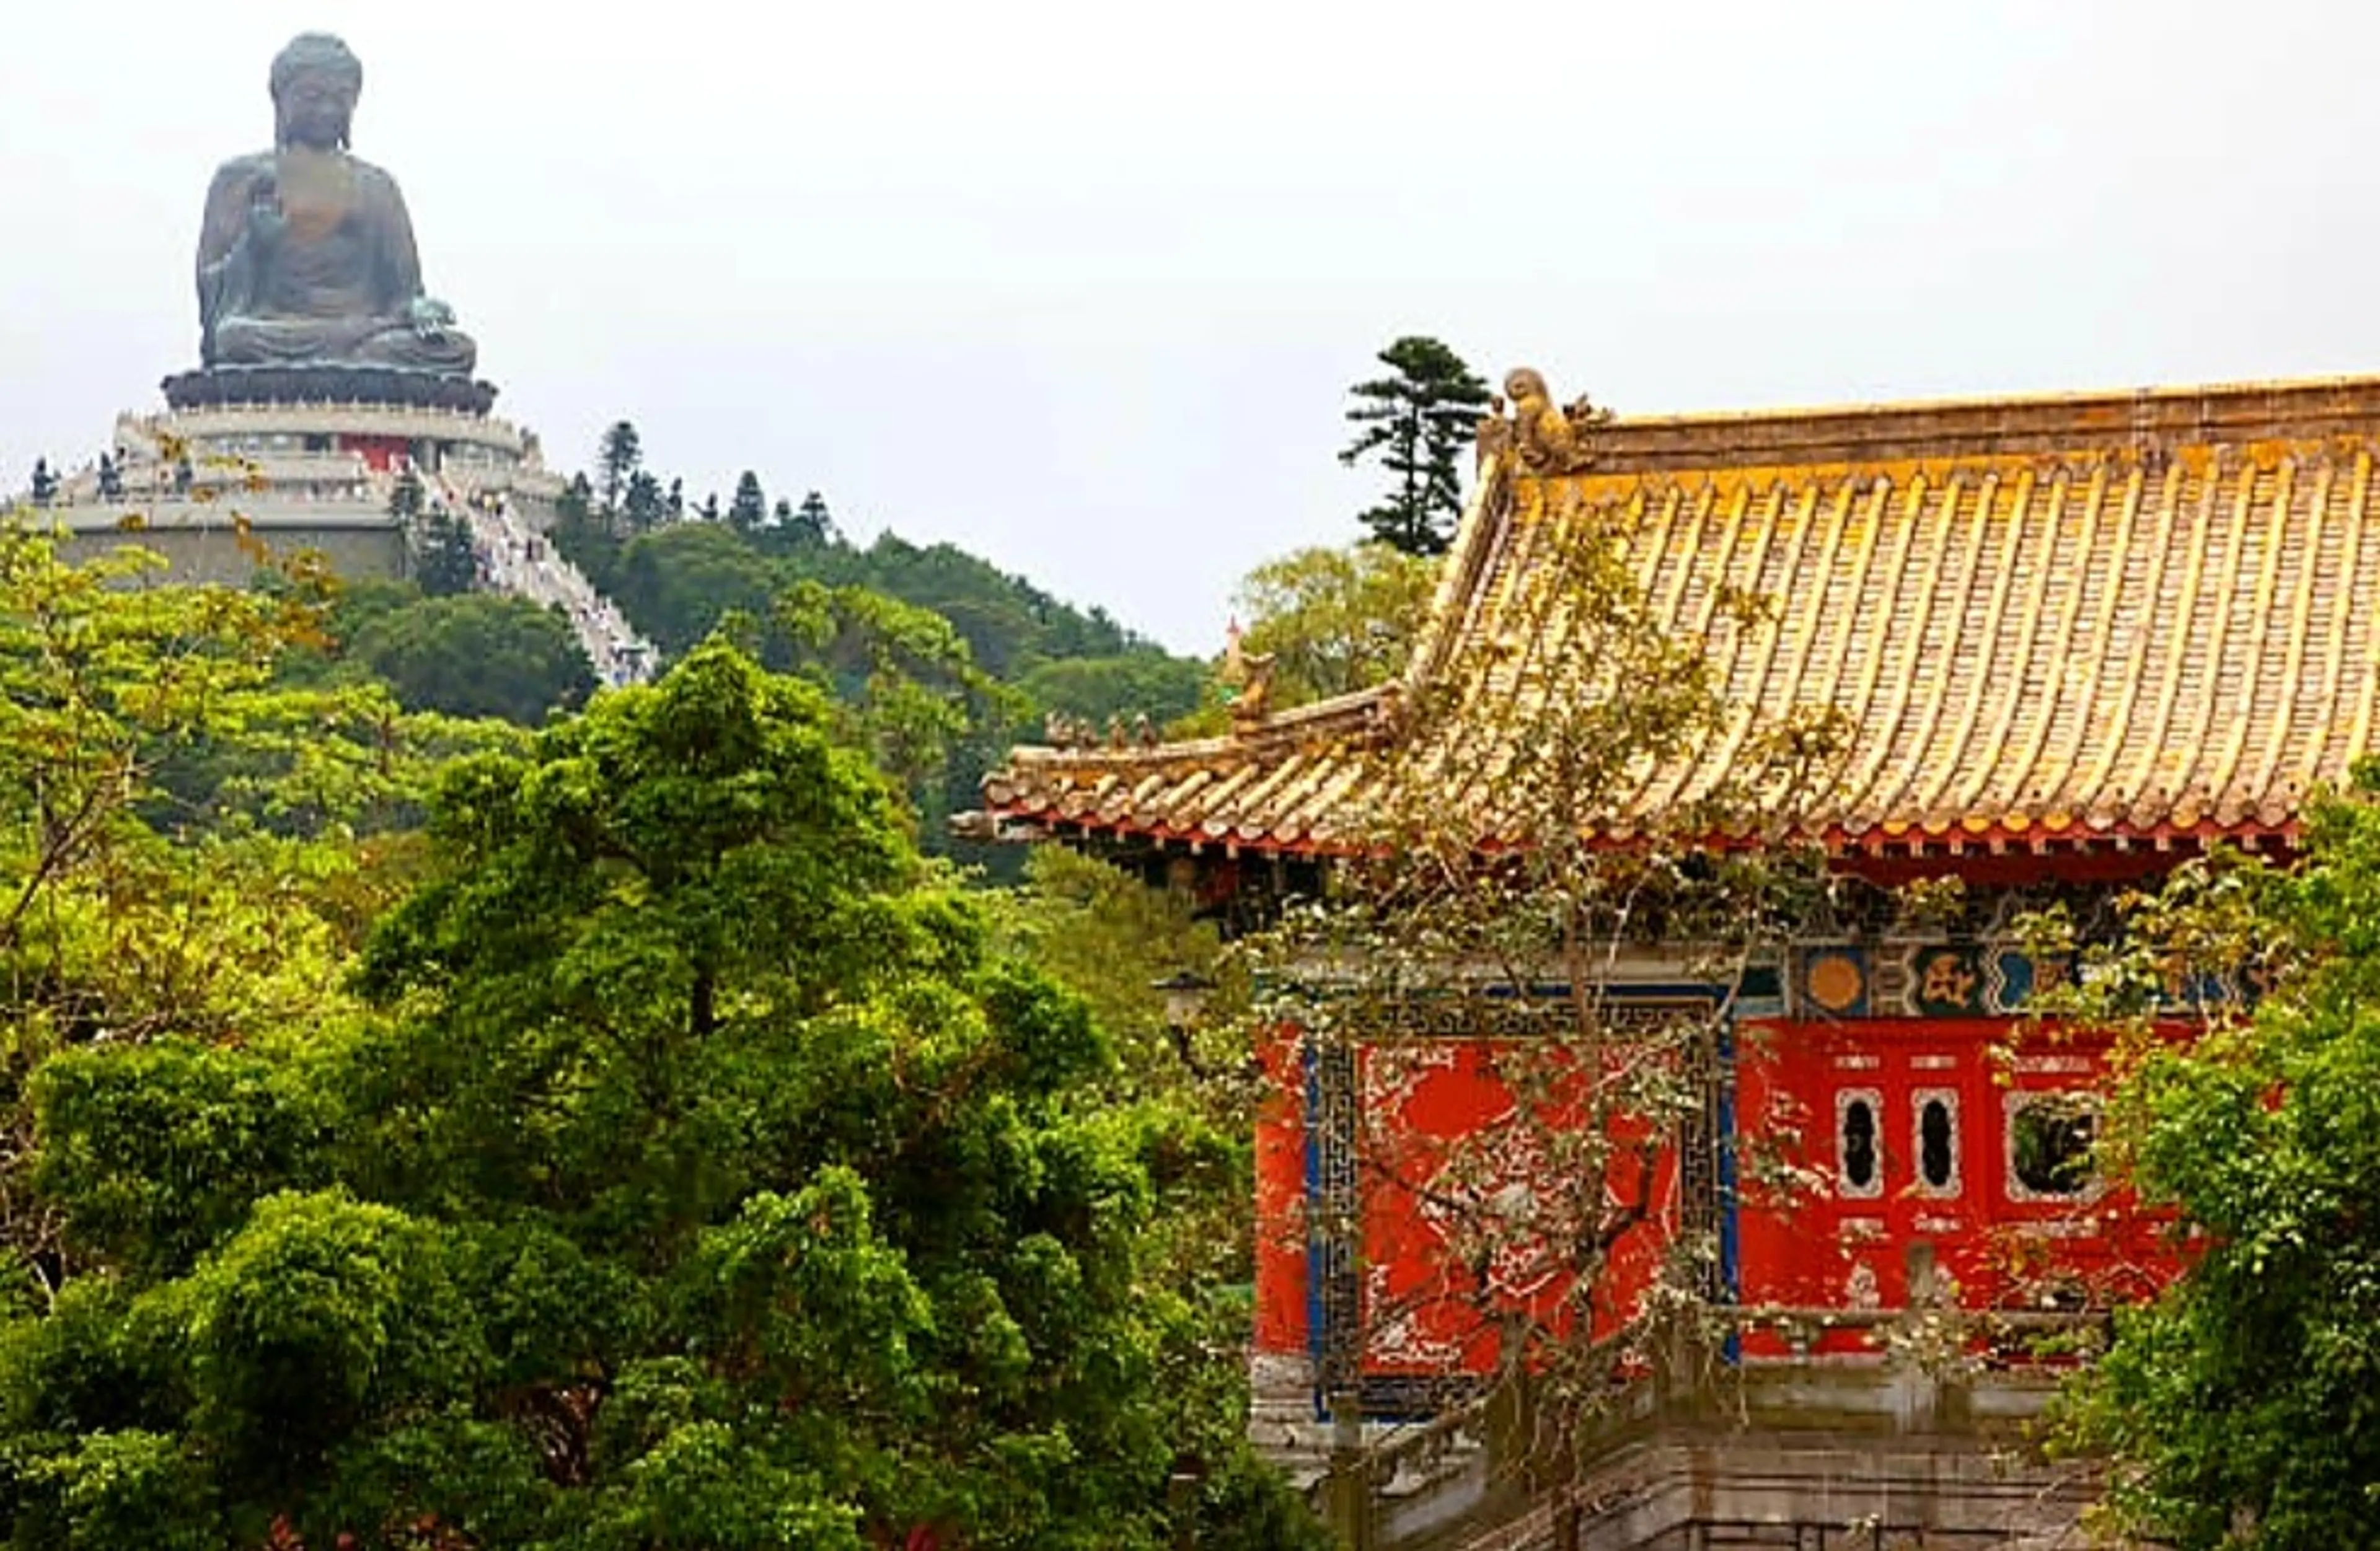 Big Buddha and Po Lin Monastery